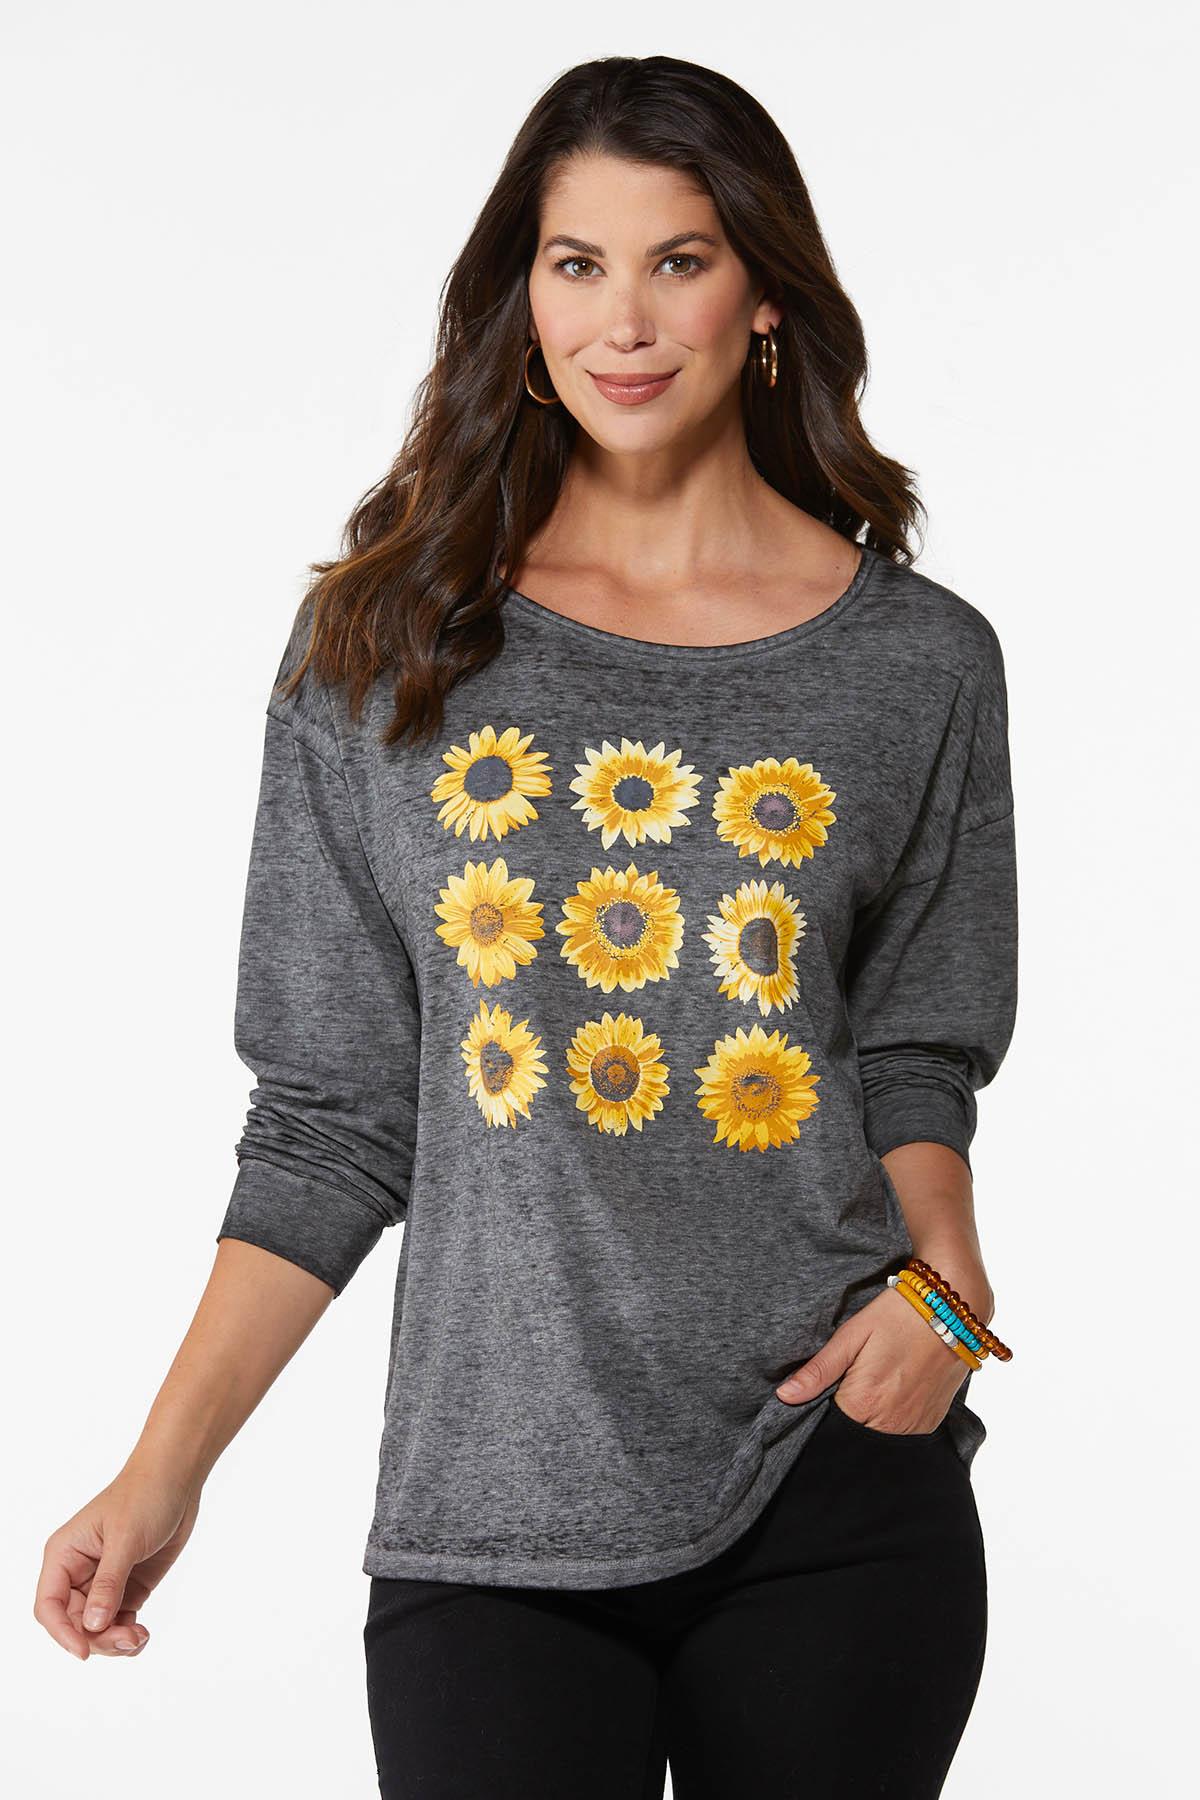 Cutout Sunflower Top